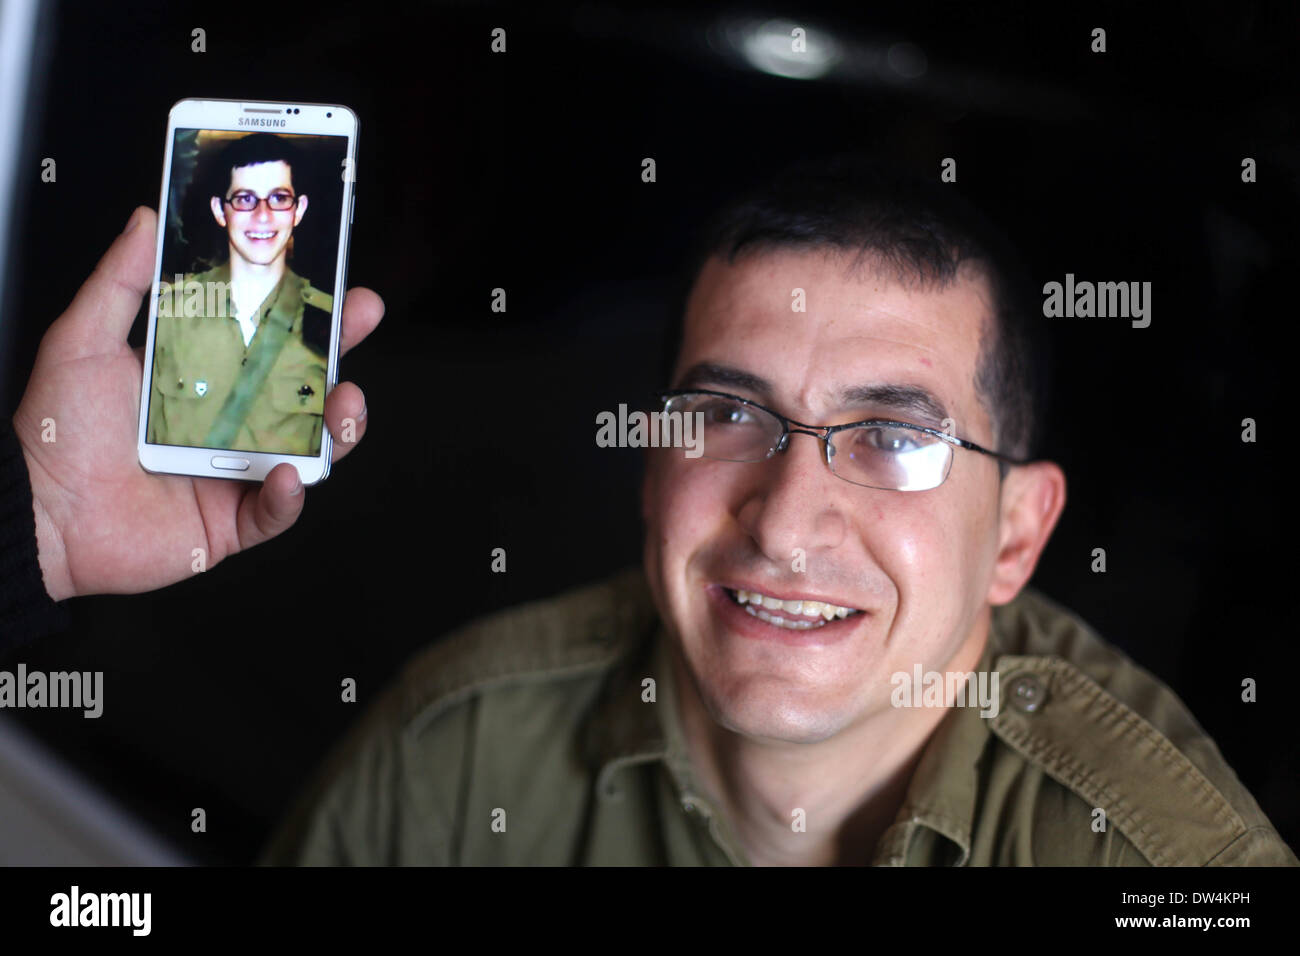 Gaza, Palästinensische Gebiete. 27. Februar 2014. Majed Jundiyeh Direktor hält ein Mobiltelefon, das Bild von Gilad Schalit, der Gestalt des Schauspielers Mahmoud Karira zu vergleichen, die den Charakter von Shalit in einen Film im Gaza-Streifen namens "Verlieren Shalit" spielen wird. "Schalit verliert", derzeit in dem abgeriegelten Gebiet gefilmt wird, ist der erste einer geplanten dreiteiligen Serie über die 2006 Aufnahme des israelischen Soldaten Gilad Schalit von bewaffneten verbündete sich mit den islamischen Militanten Hamas-Bewegung. Teile zwei und drei werden Schalits Zeit in Gefangenschaft und seine 2011 Swap für Hunderte von palästinensischen Pr darzustellen. Stockfoto